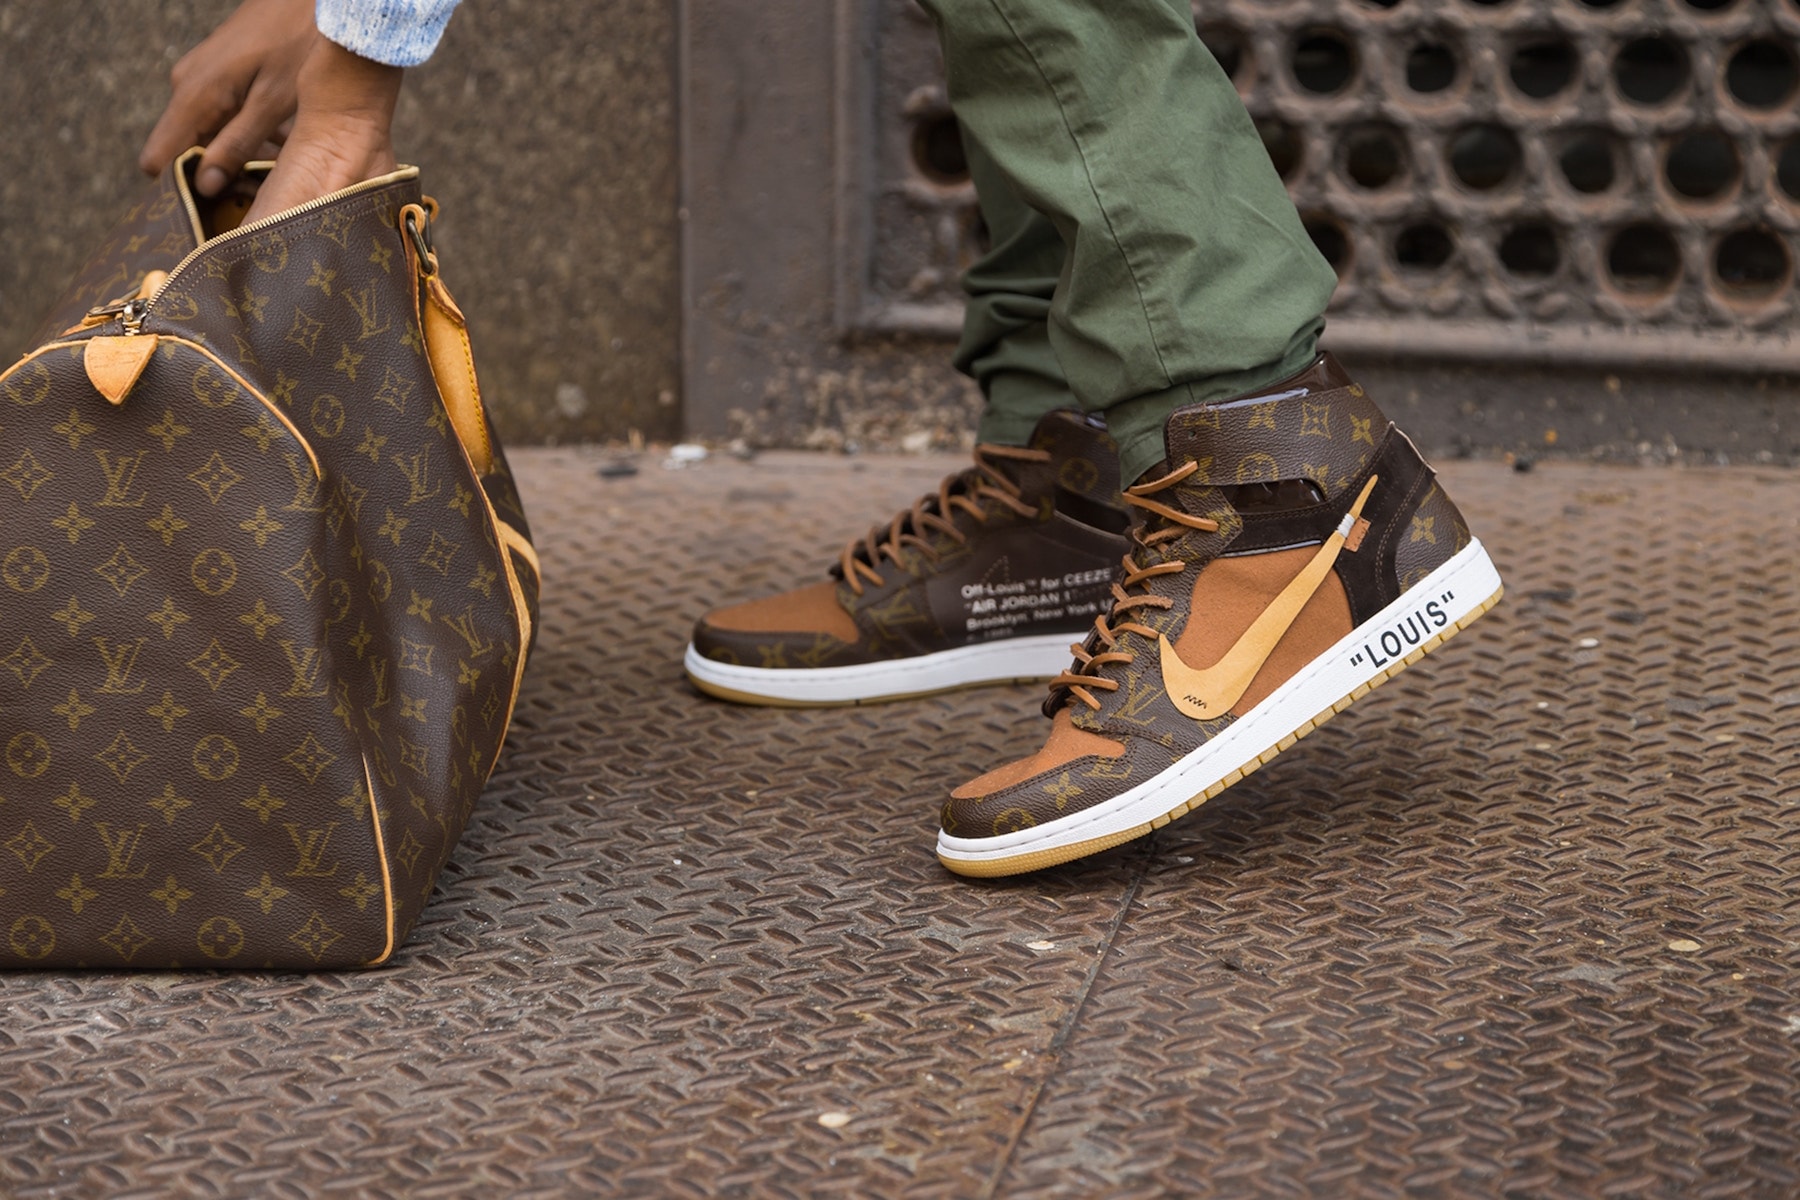 紐約藝術家打造 Air Jordan 1「Off-Louis™」限量定製鞋款